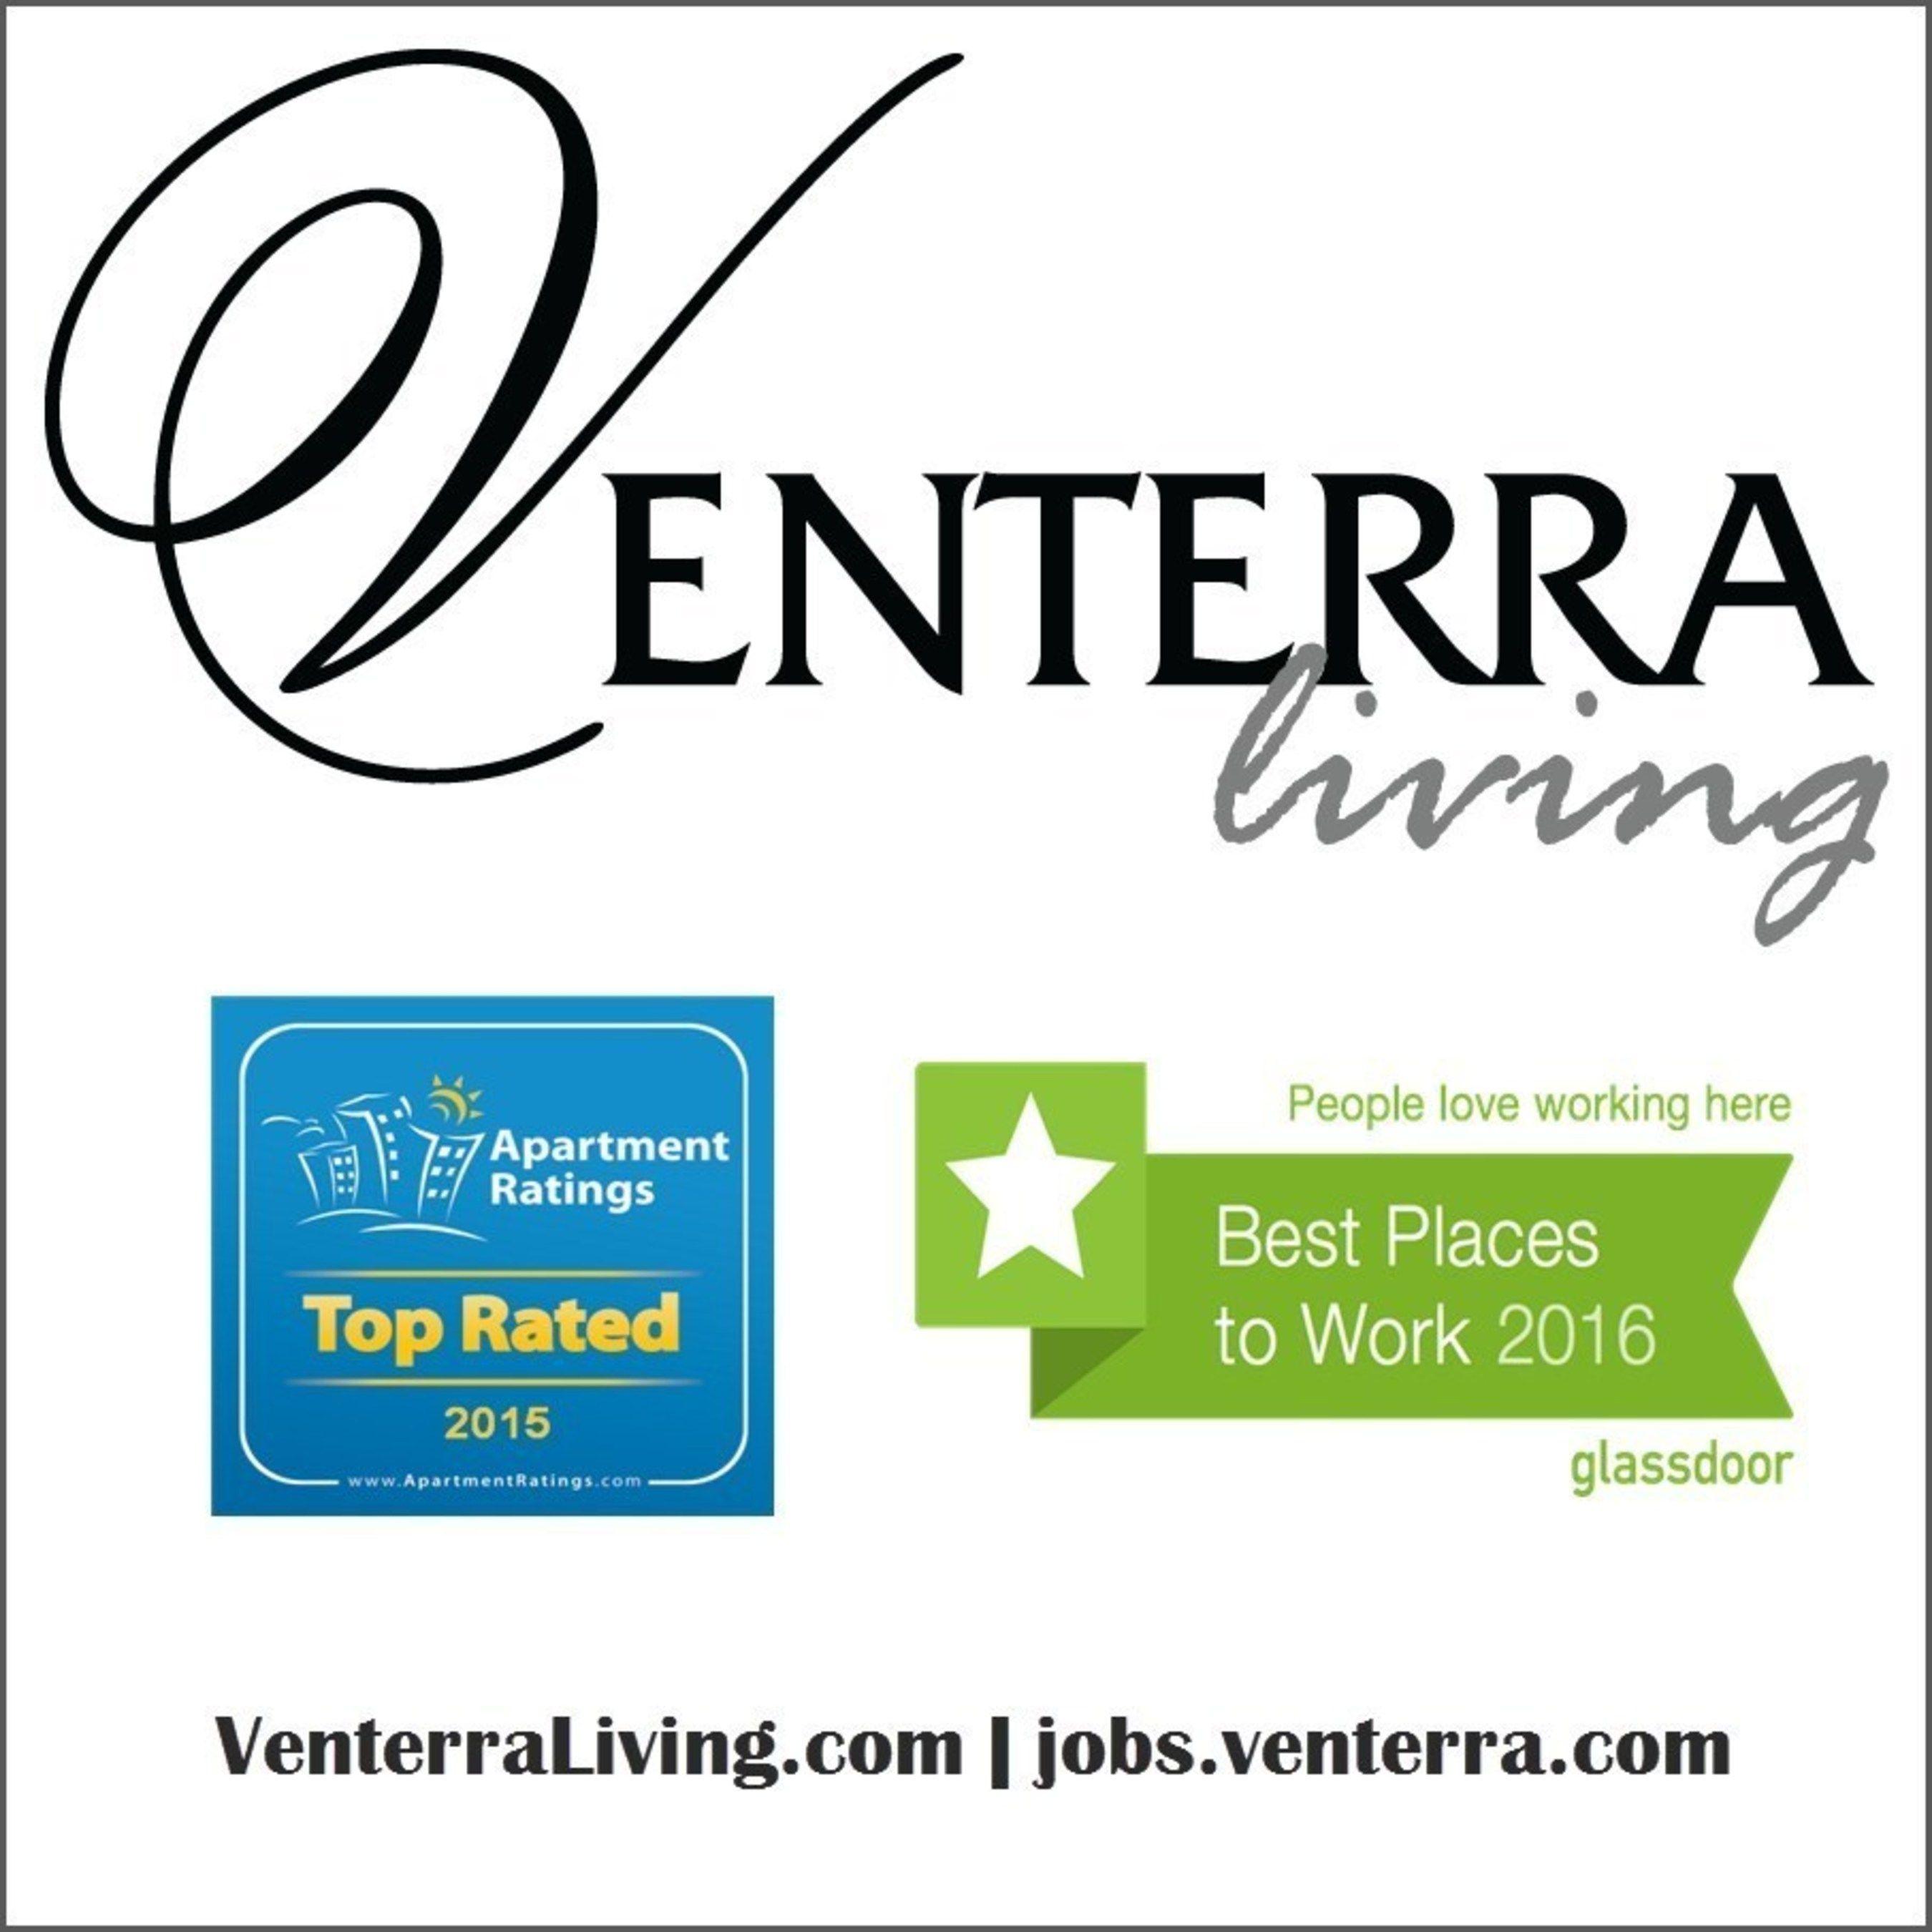 Apartmentratings.com Logo - Venterra Realty Apartments Receive Top Award from ApartmentRatings.com